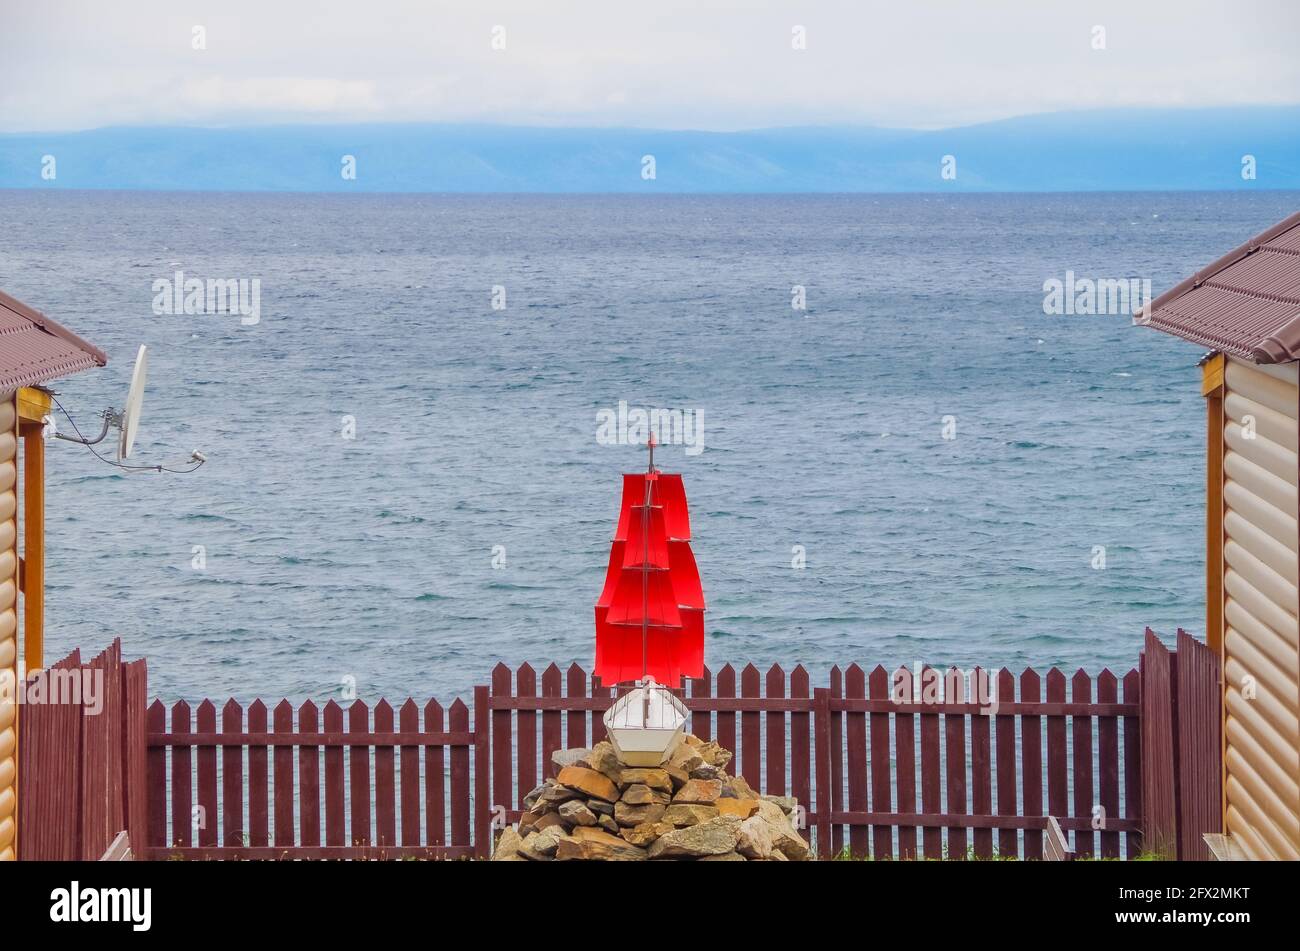 Schiff hinter dem Zaun, Brigantine mit roten Segeln vor dem Hintergrund des offenen Meeres. Platz für Text kopieren, Konzept der Freiheitsbeschränkung Stockfoto